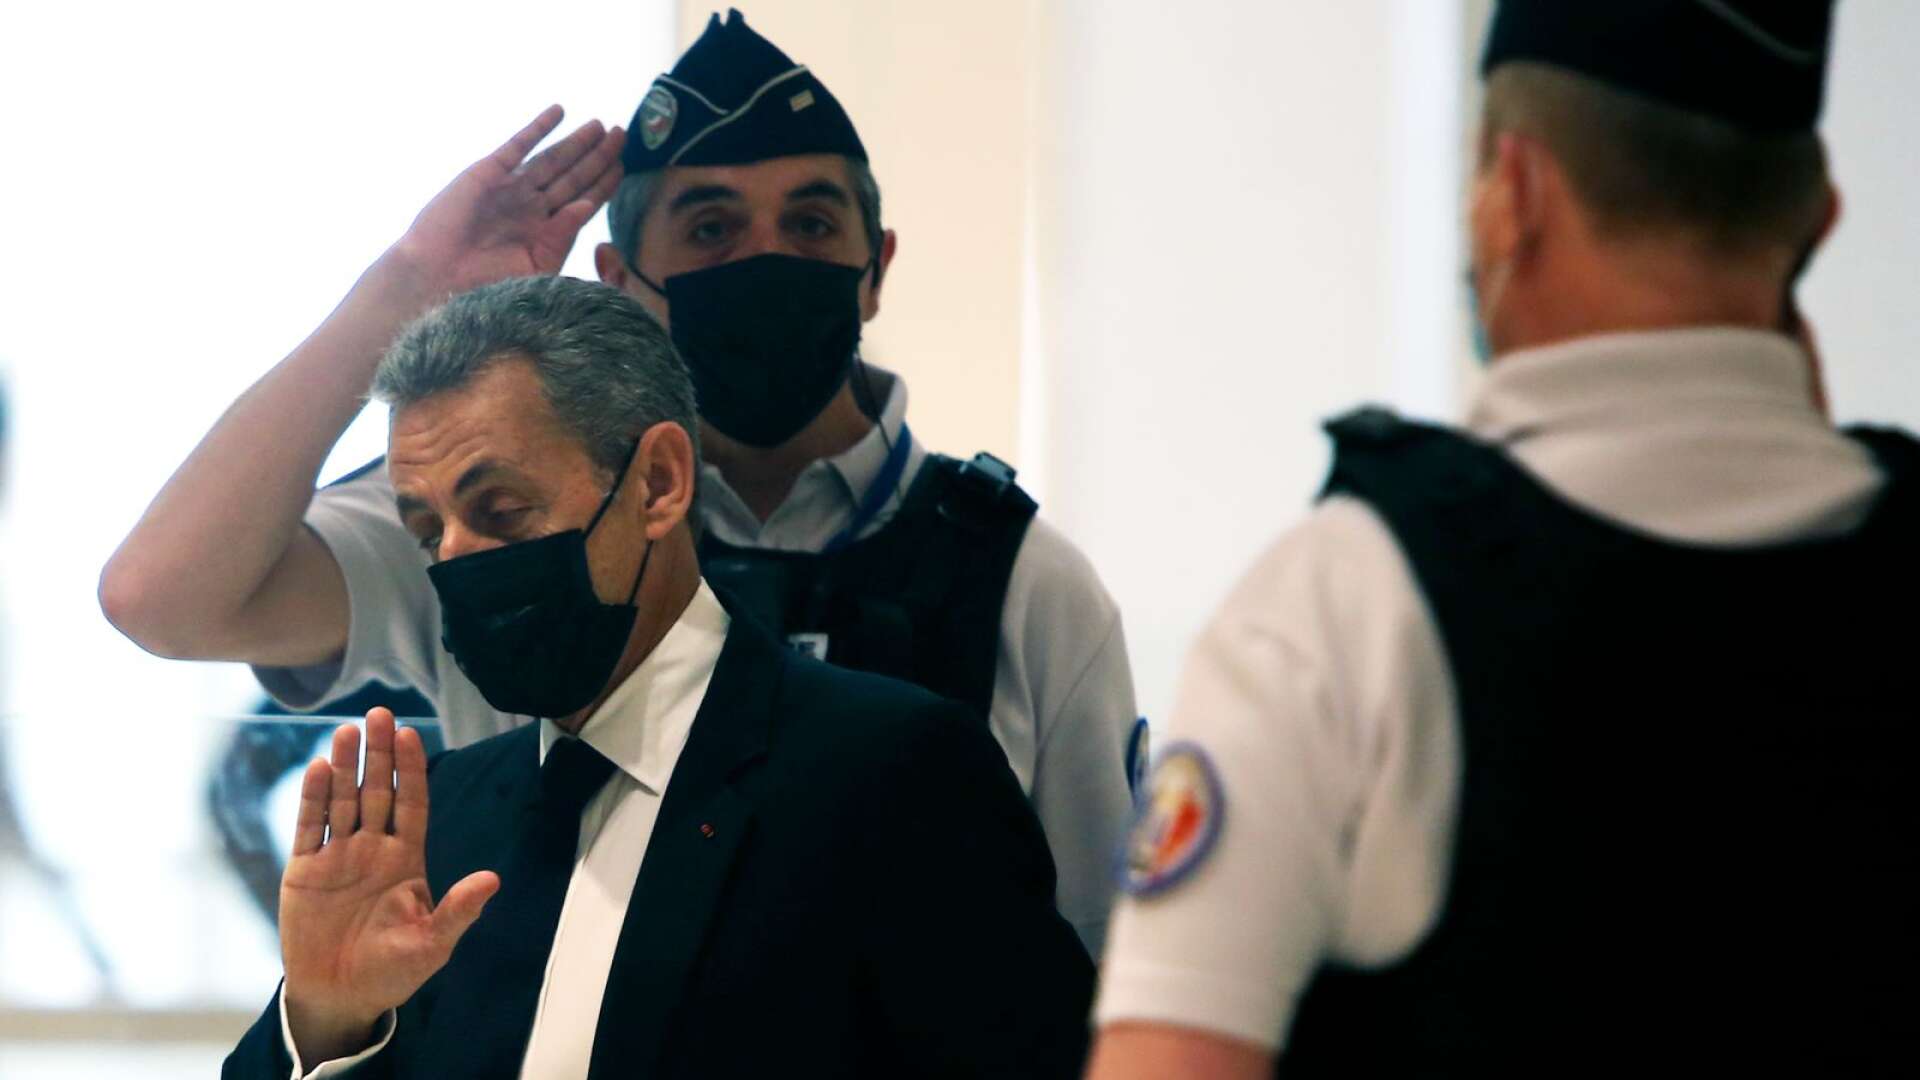 Den tidigare presidenten Nicolas Sarkozy har nämligen för andra gången dömts till fängelsestraff, skriver Byrån.